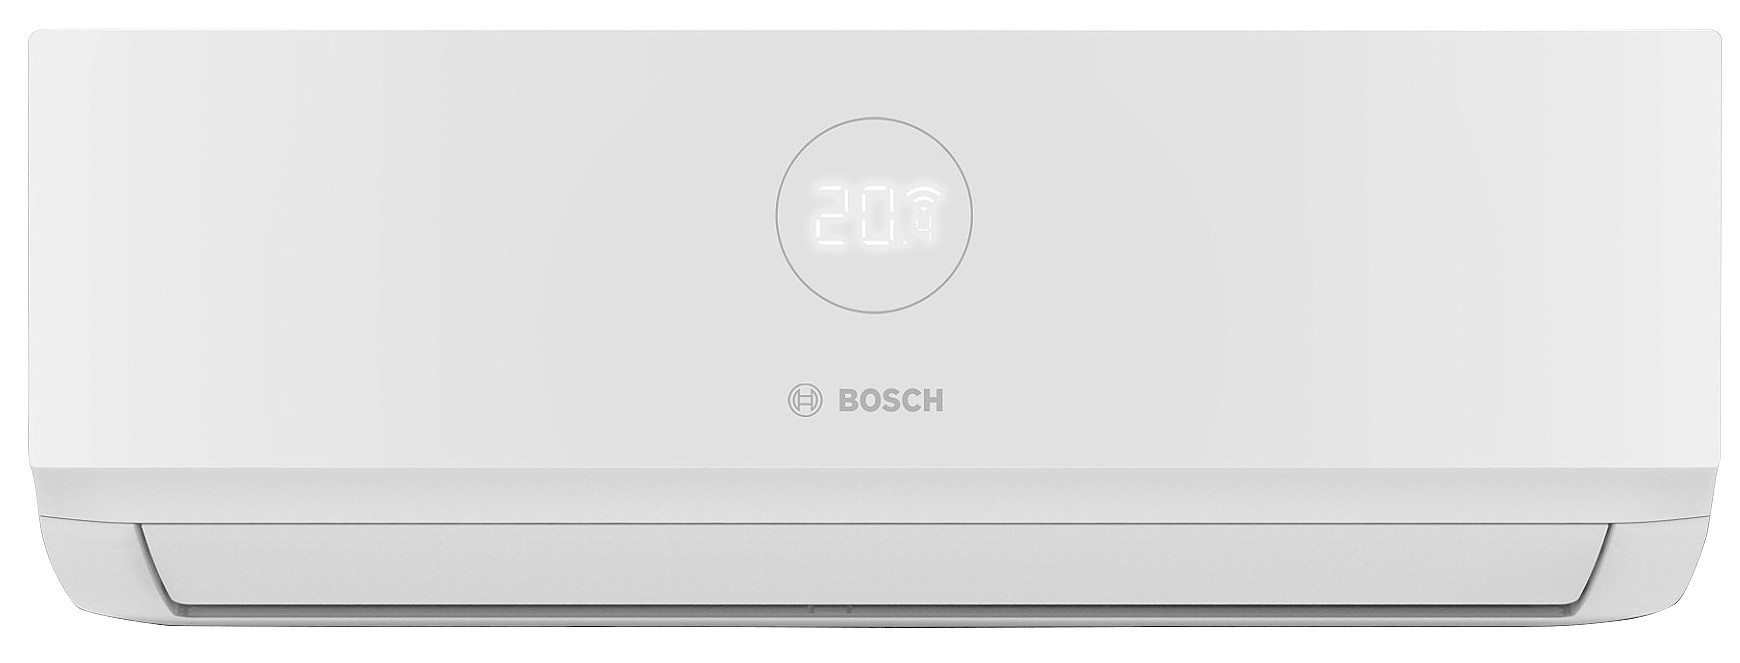 Отзывы внутренний блок мультисплит-системы Bosch CL3000iU W 26E 2,6 кВт в Украине